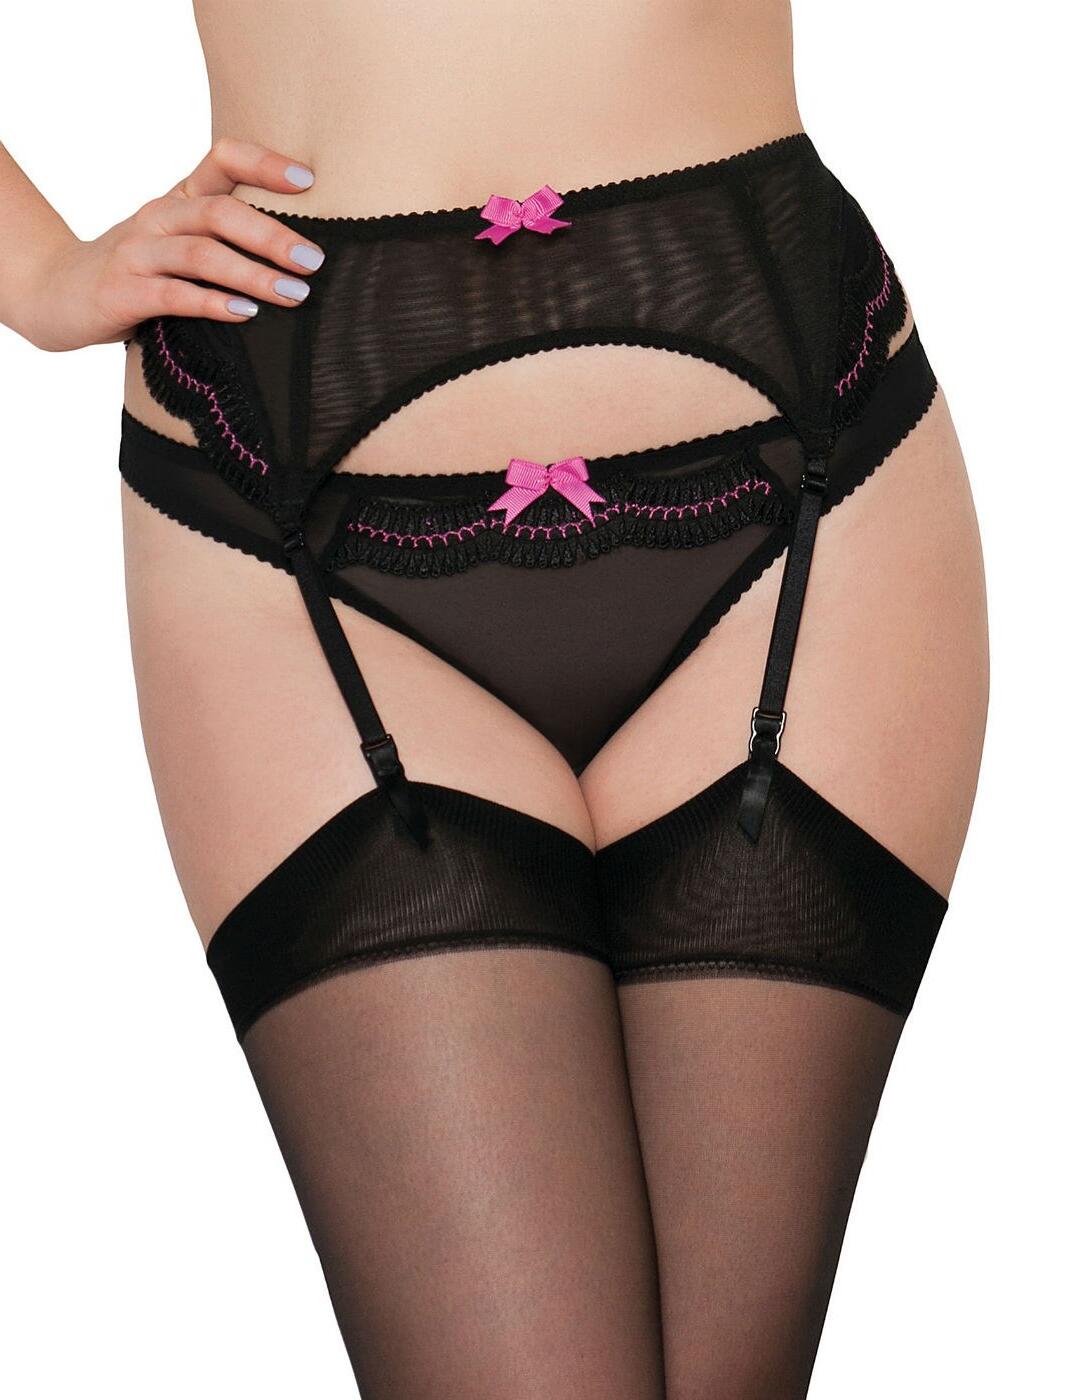 CK5104 Curvy Kate Cabaret Suspender Belt - CK5104 Black 